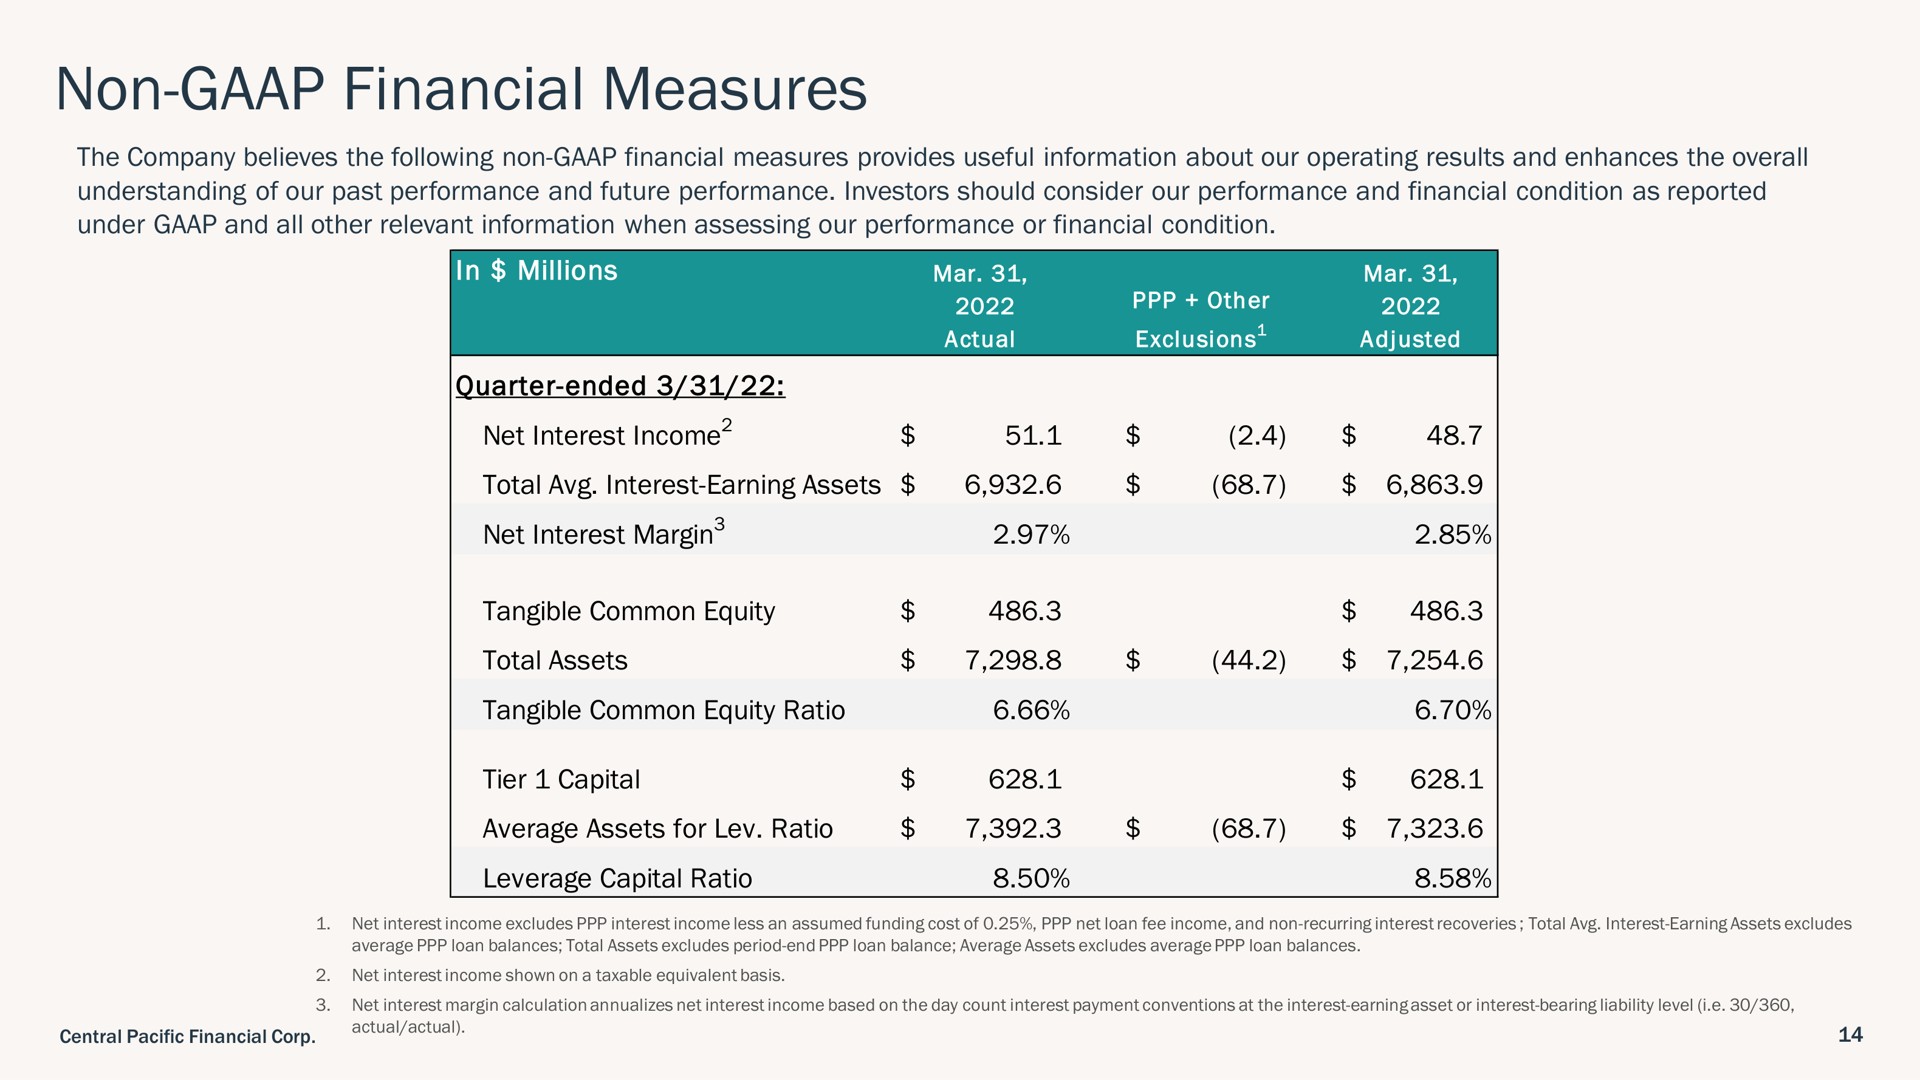 non financial measures | Central Pacific Financial